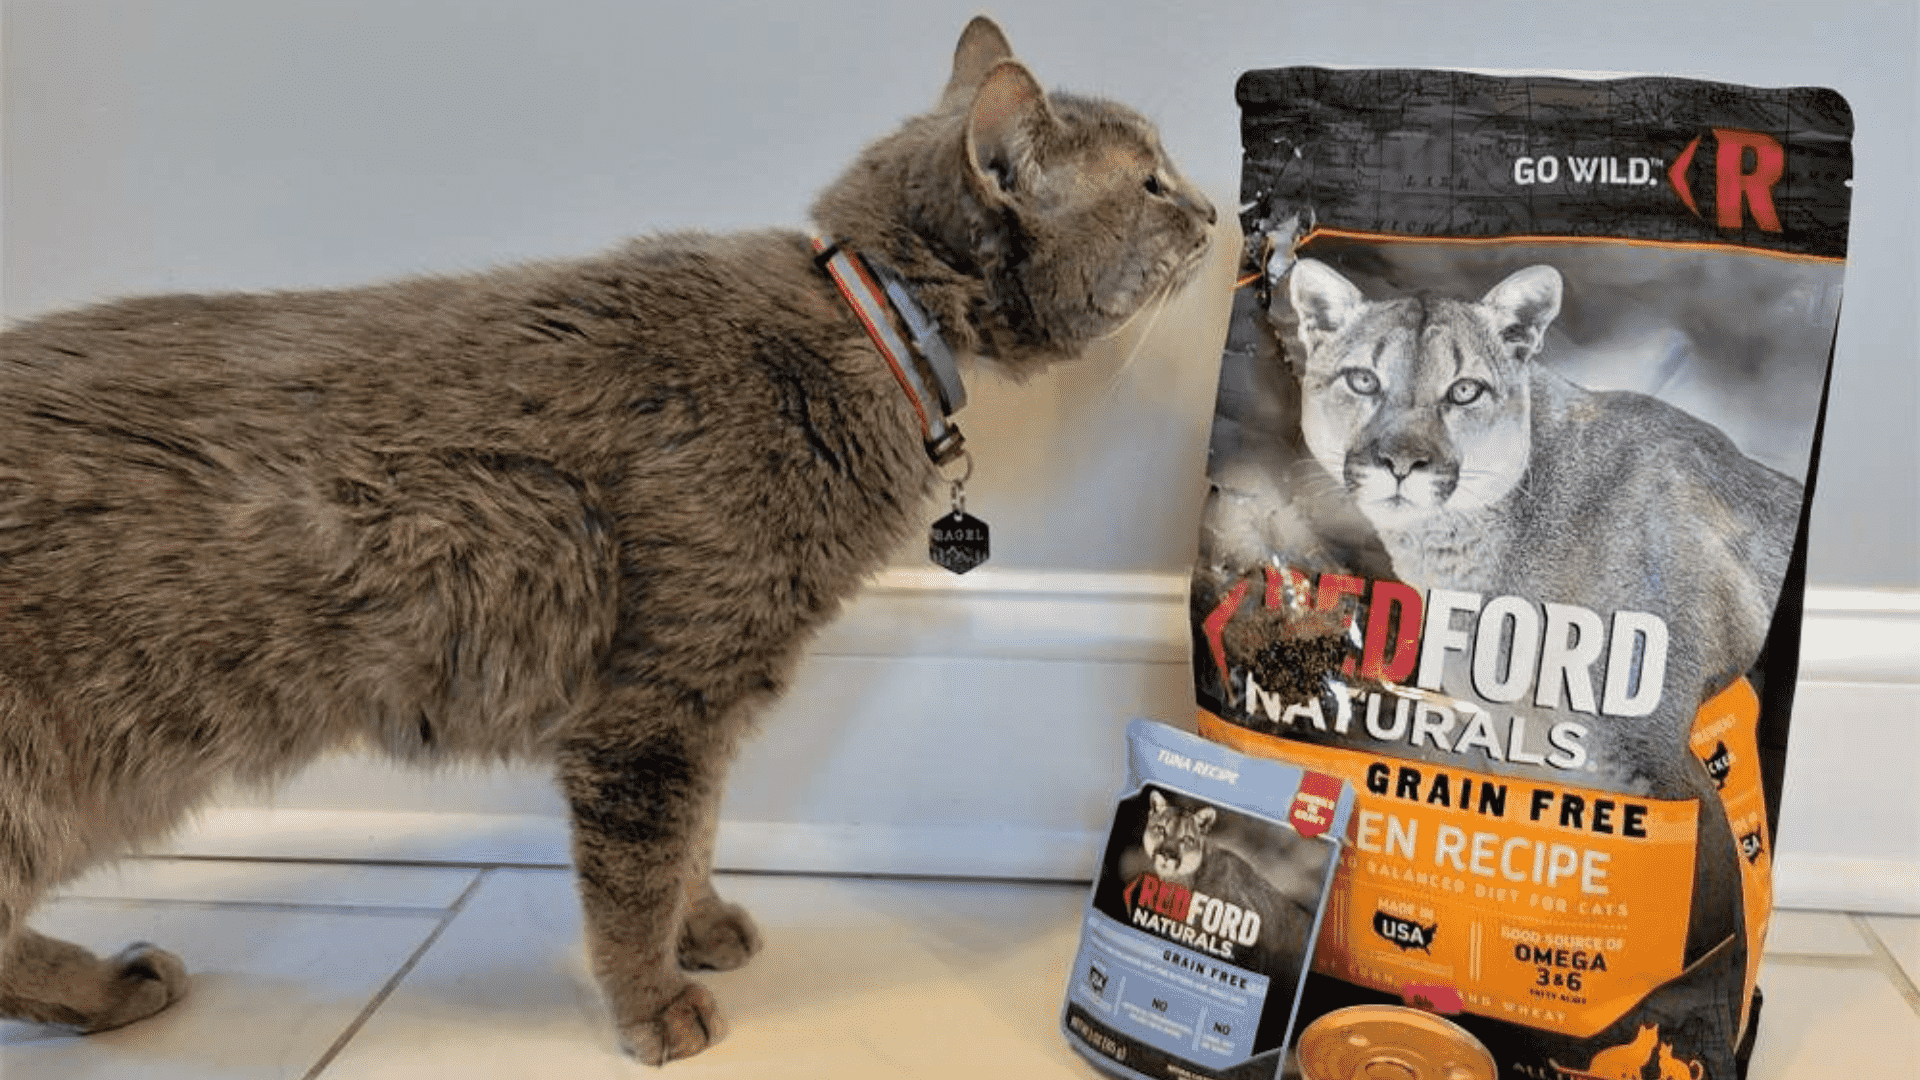 Redford Naturals Cat Food